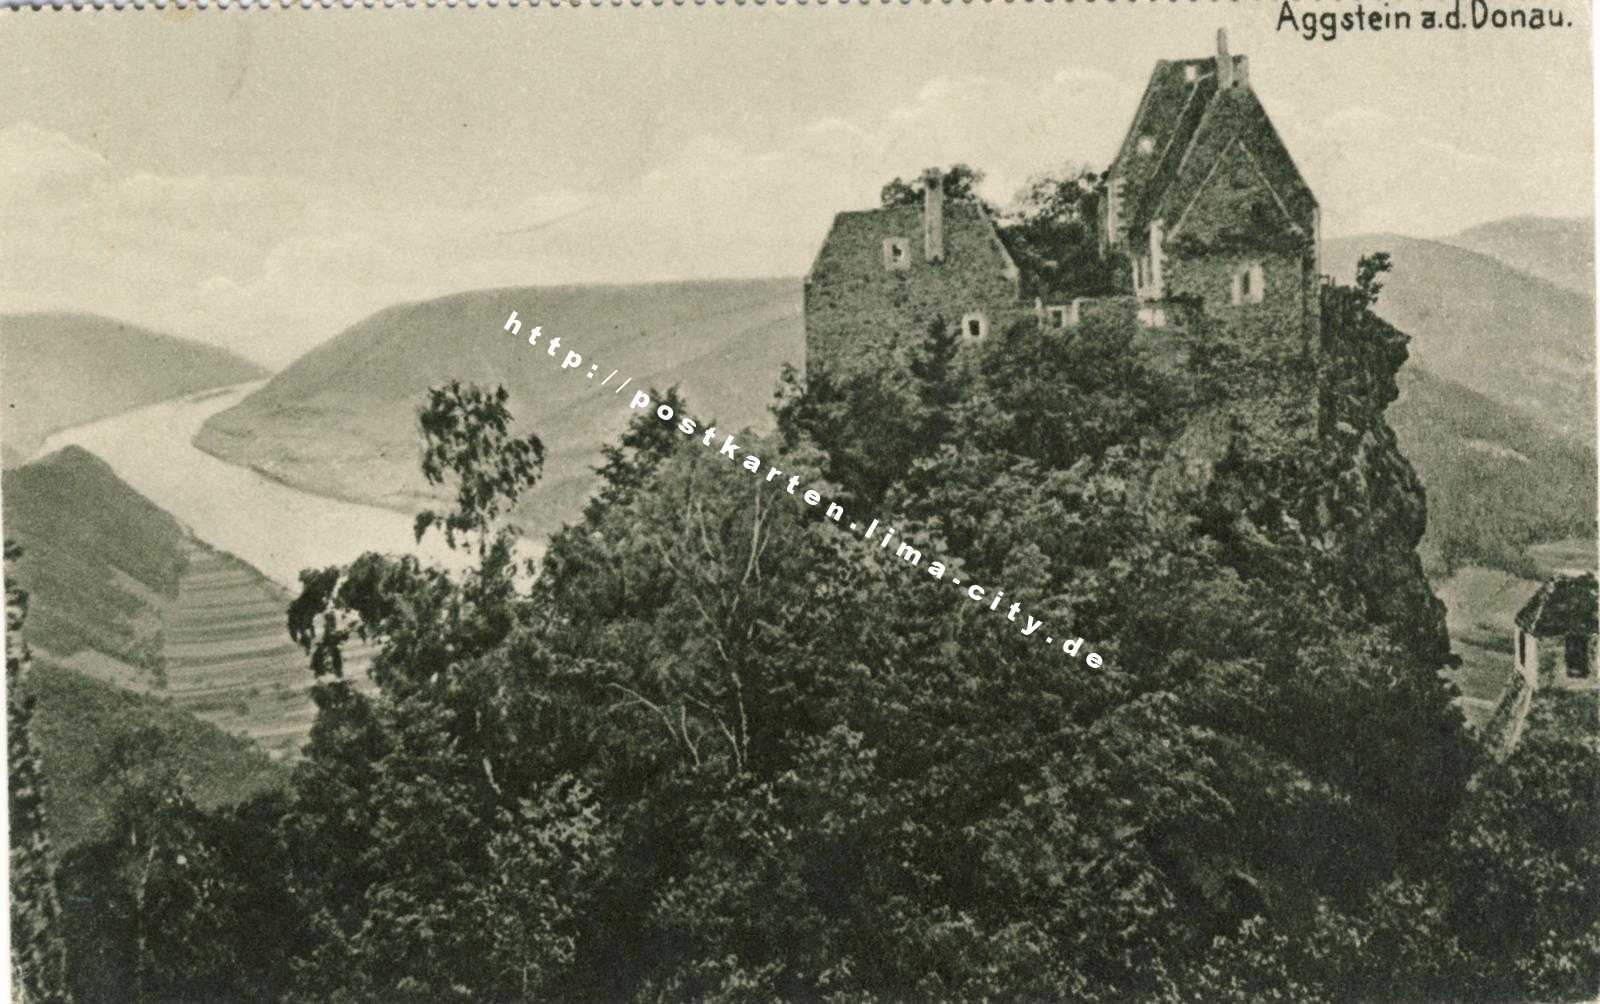 Wildes Aggstein 1910